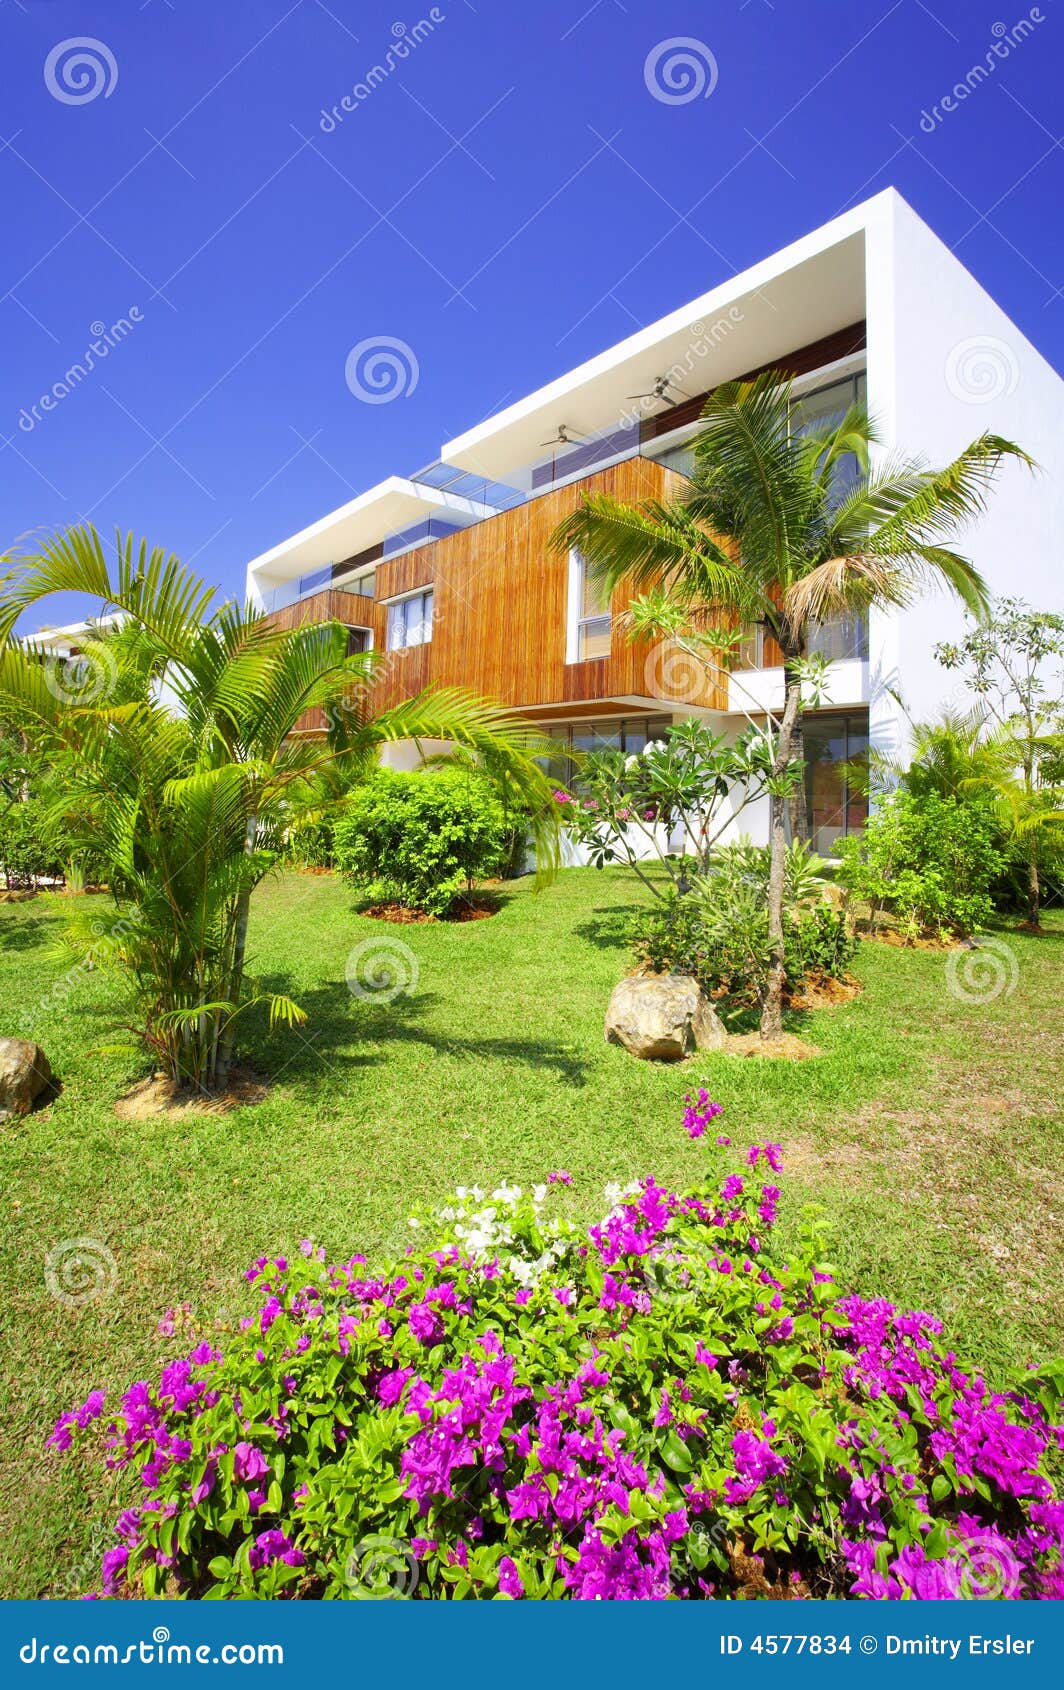 tropic villa